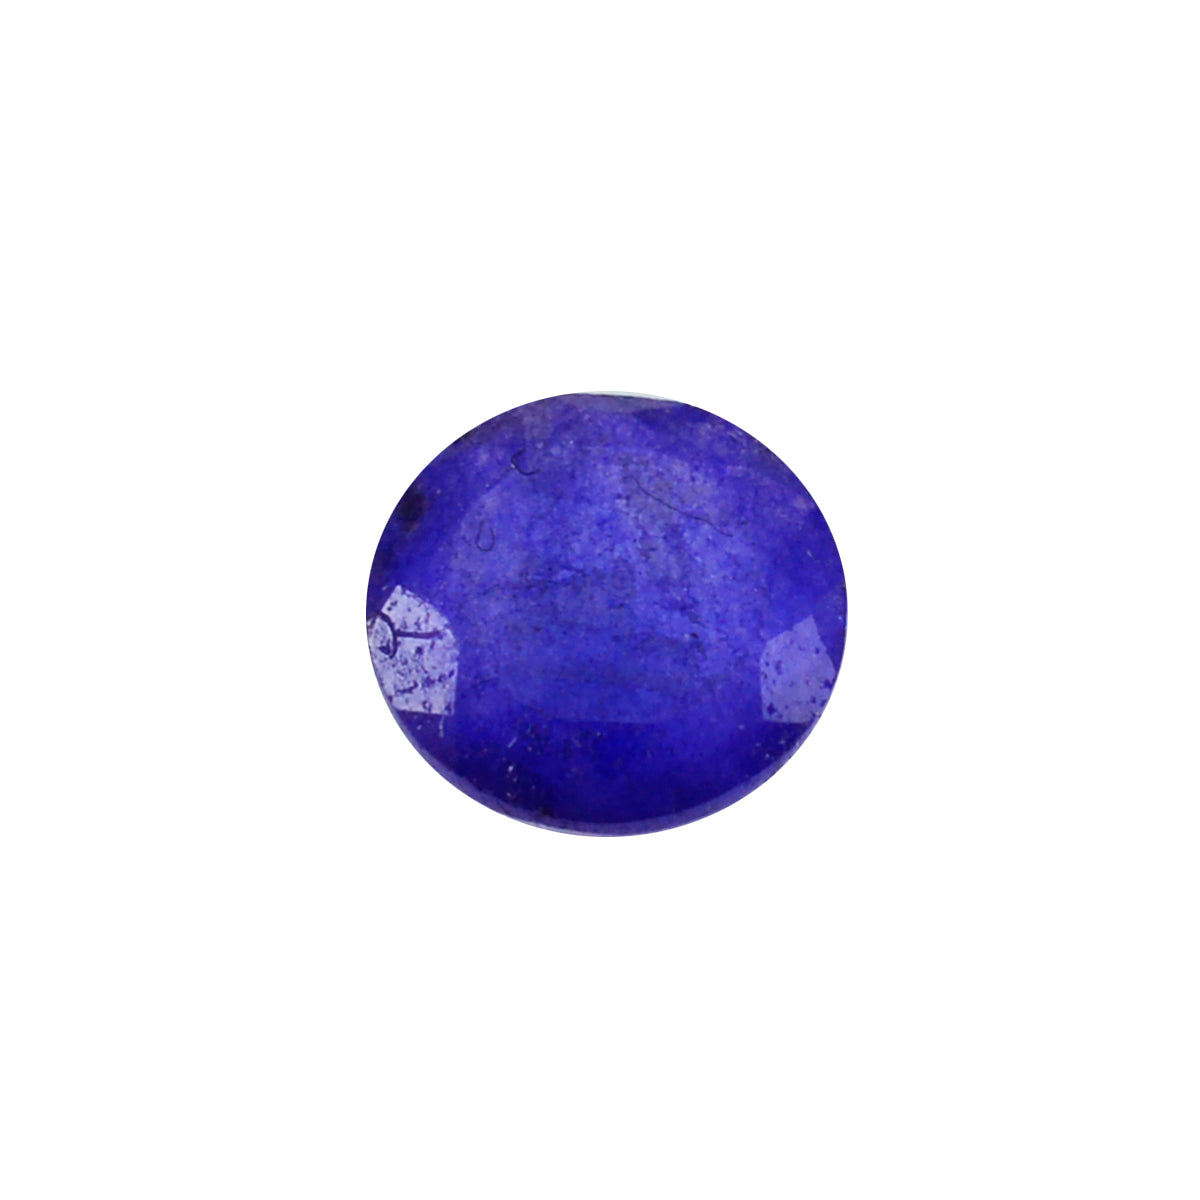 riyogems 1шт настоящая синяя яшма ограненная 12х12 мм круглая форма +1 драгоценный камень качества